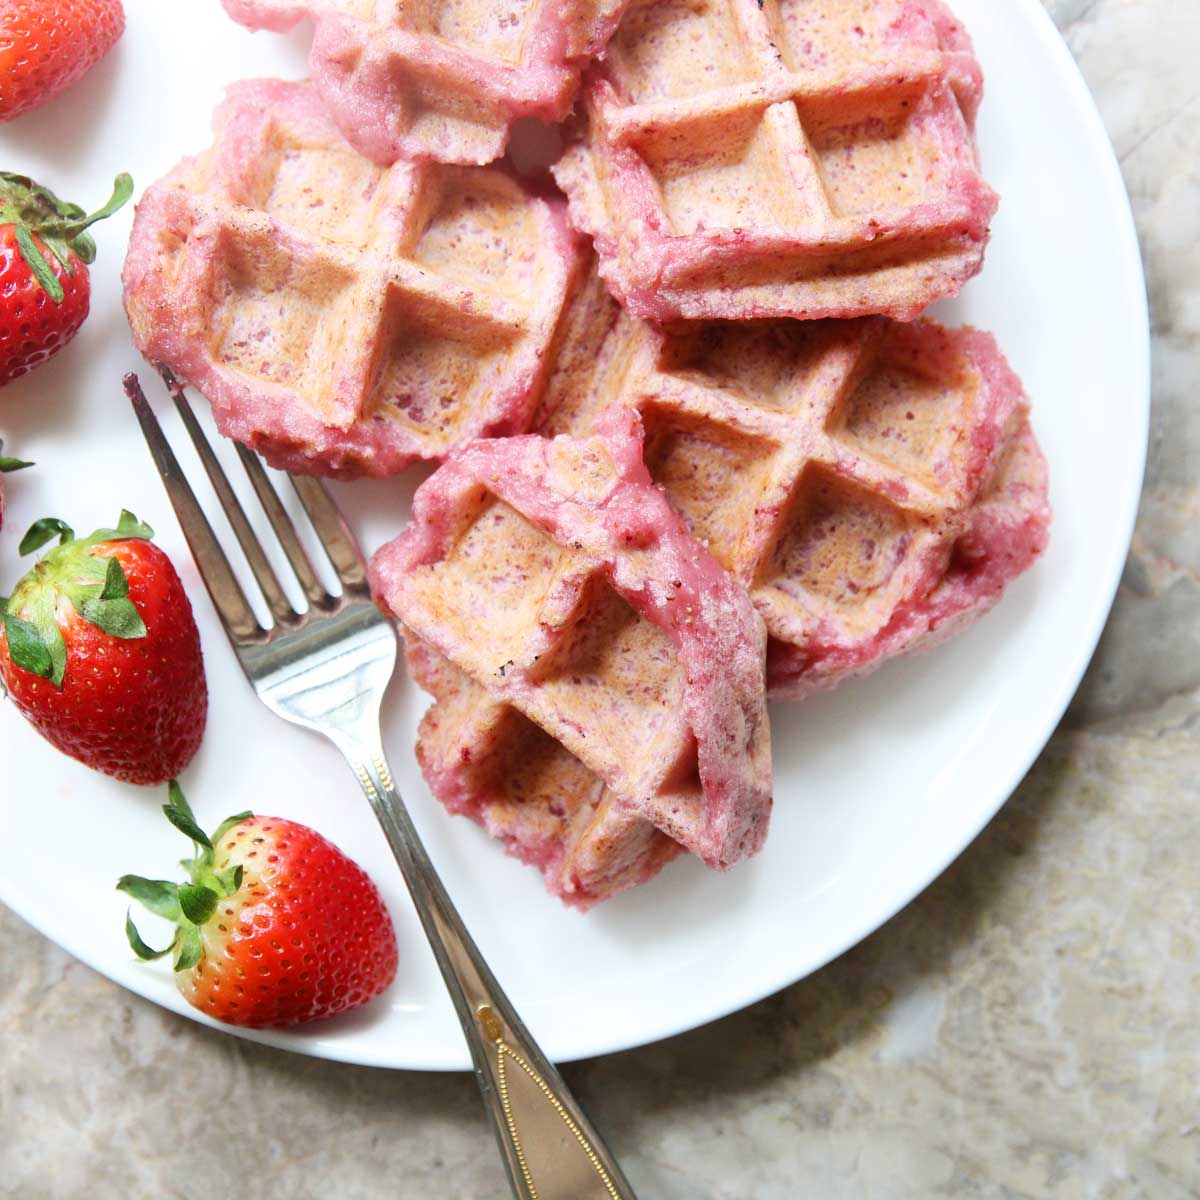 How to Make Strawberry Mochi Waffles (Gluten-Free, Vegan Recipe) - Cashew Butter Kinako Mochi